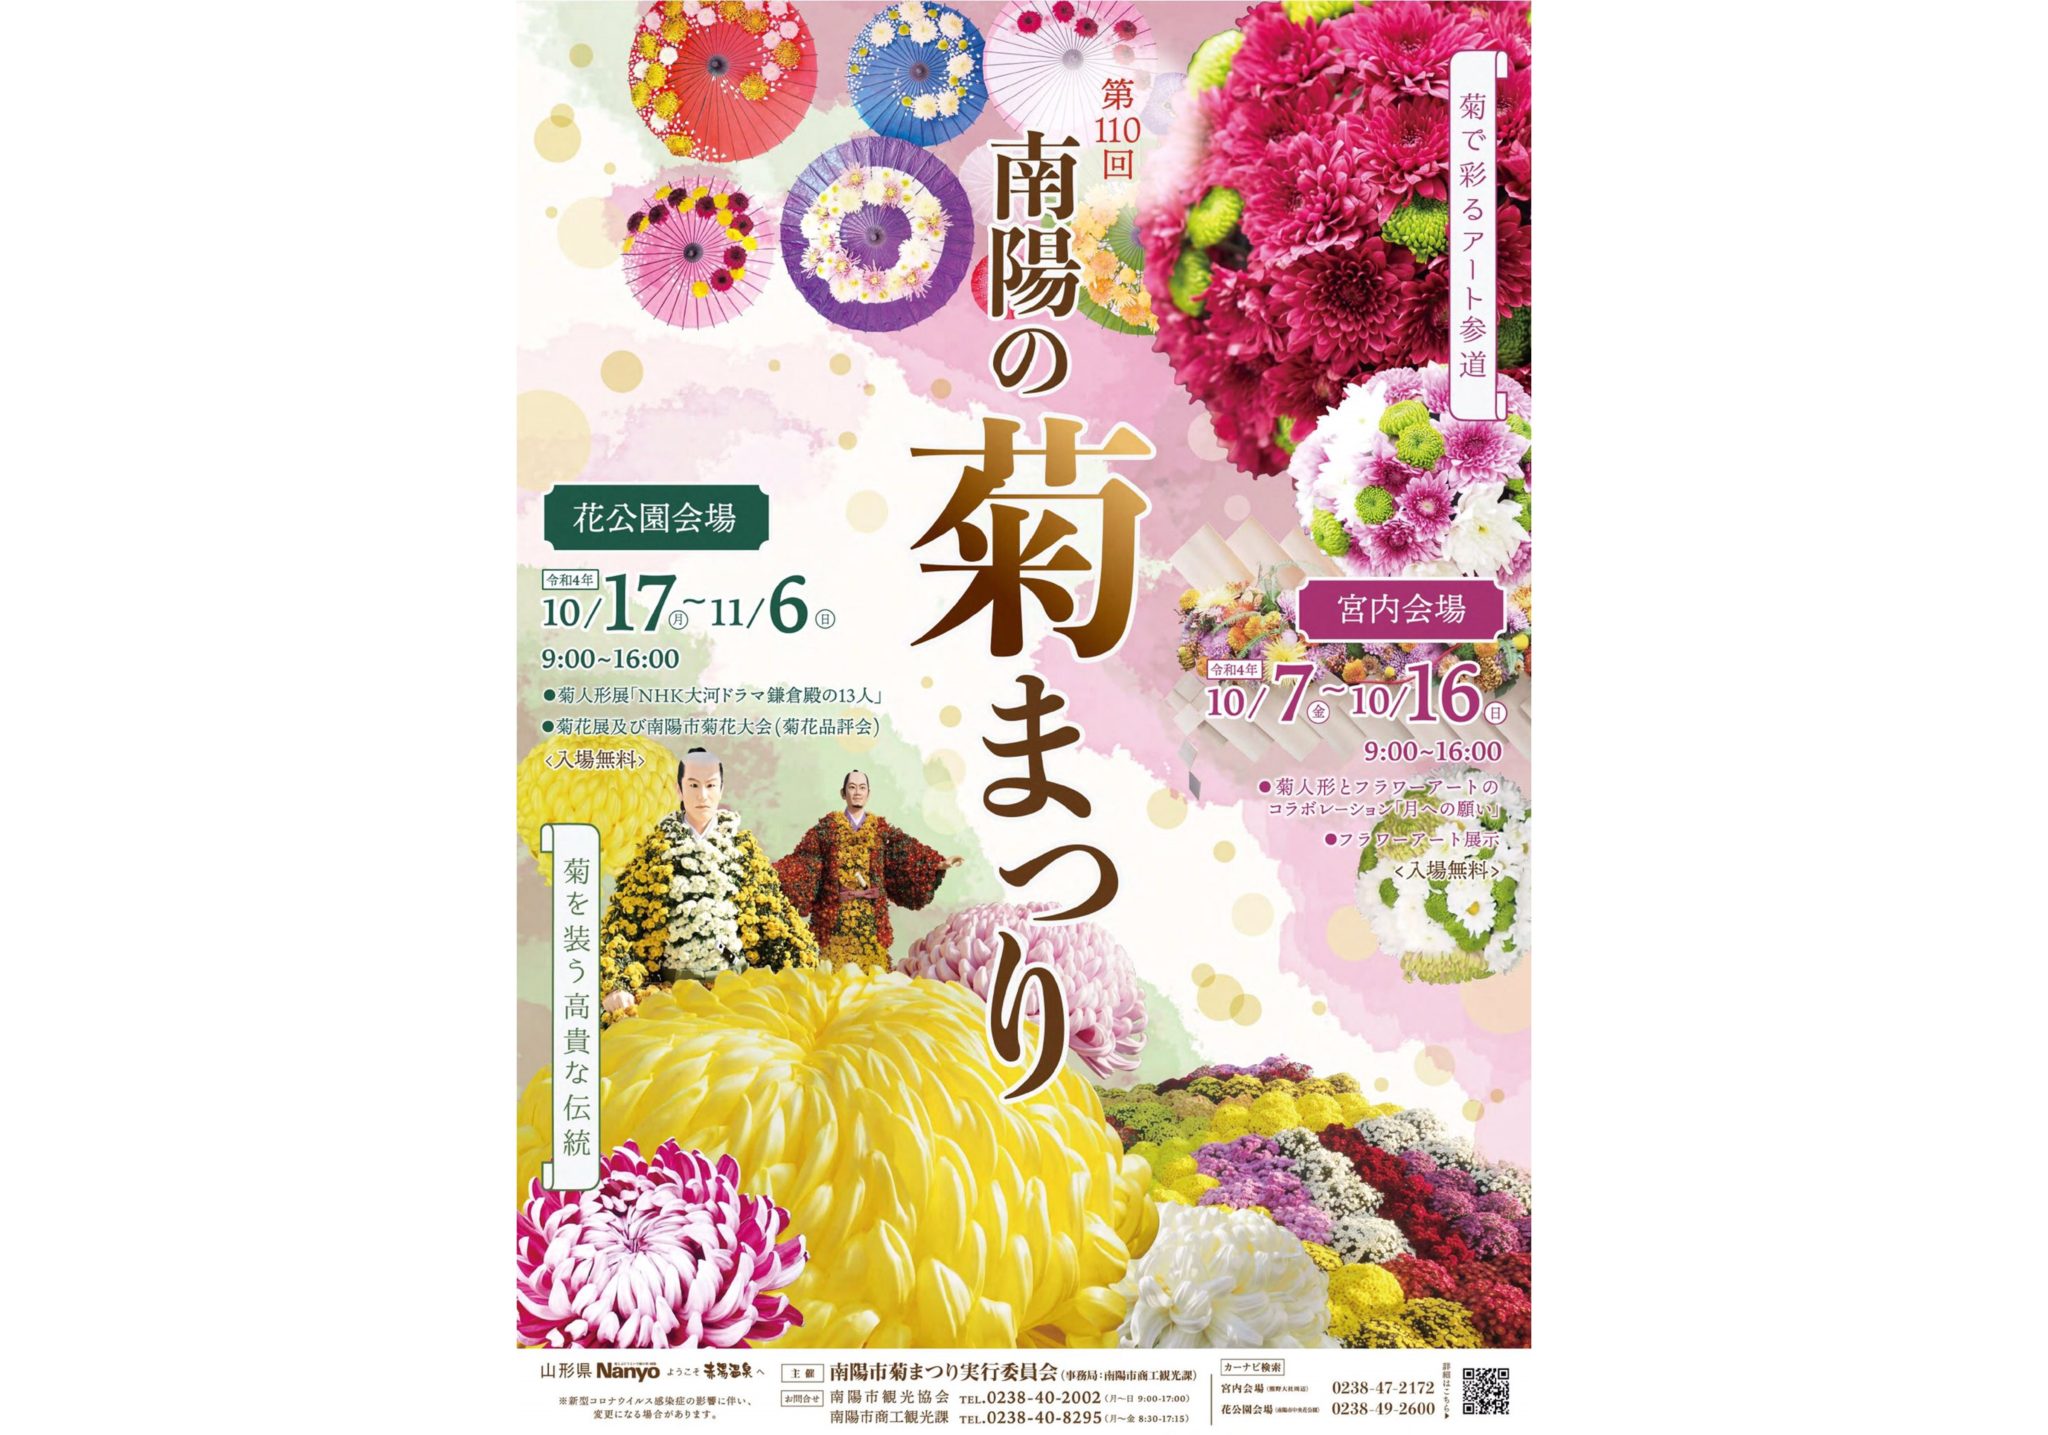 Nanyo Chrysanthemum Festival